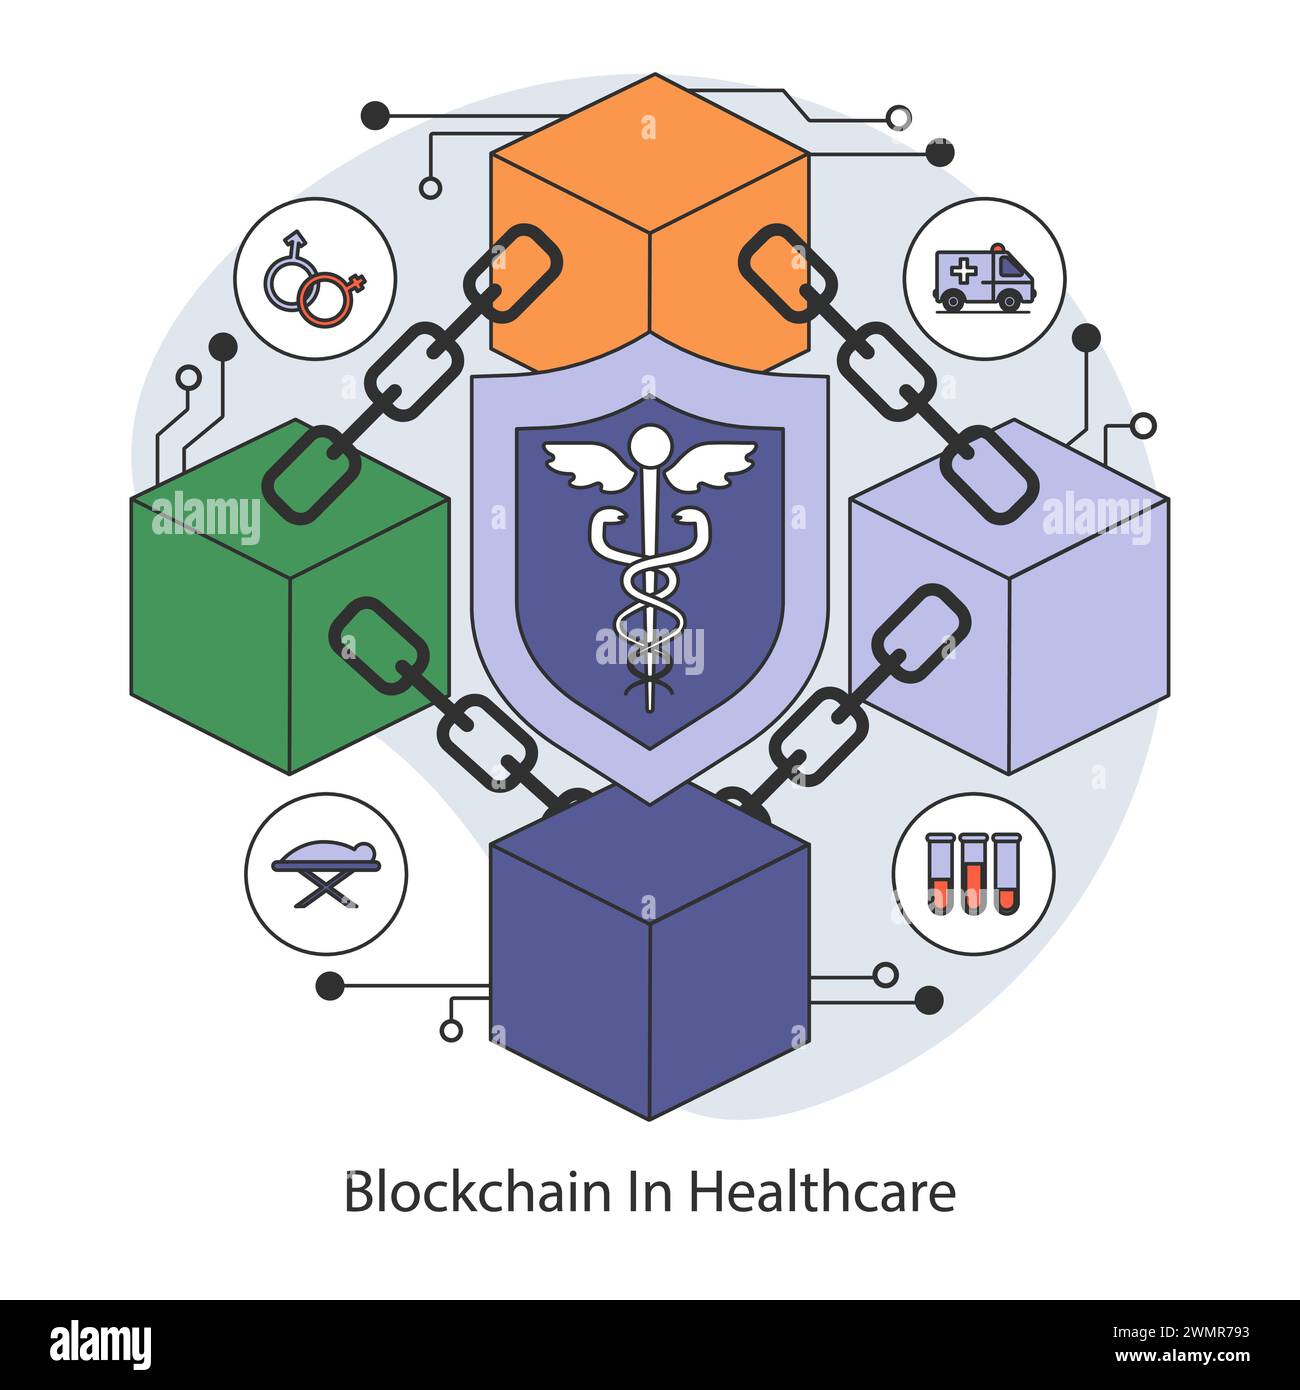 Blockchain-Technologie im Gesundheitskonzept. Sicheres und dezentralisiertes System für medizinische Datenverwaltung und Datenschutz. Illustration des flachen Vektors. Stock Vektor